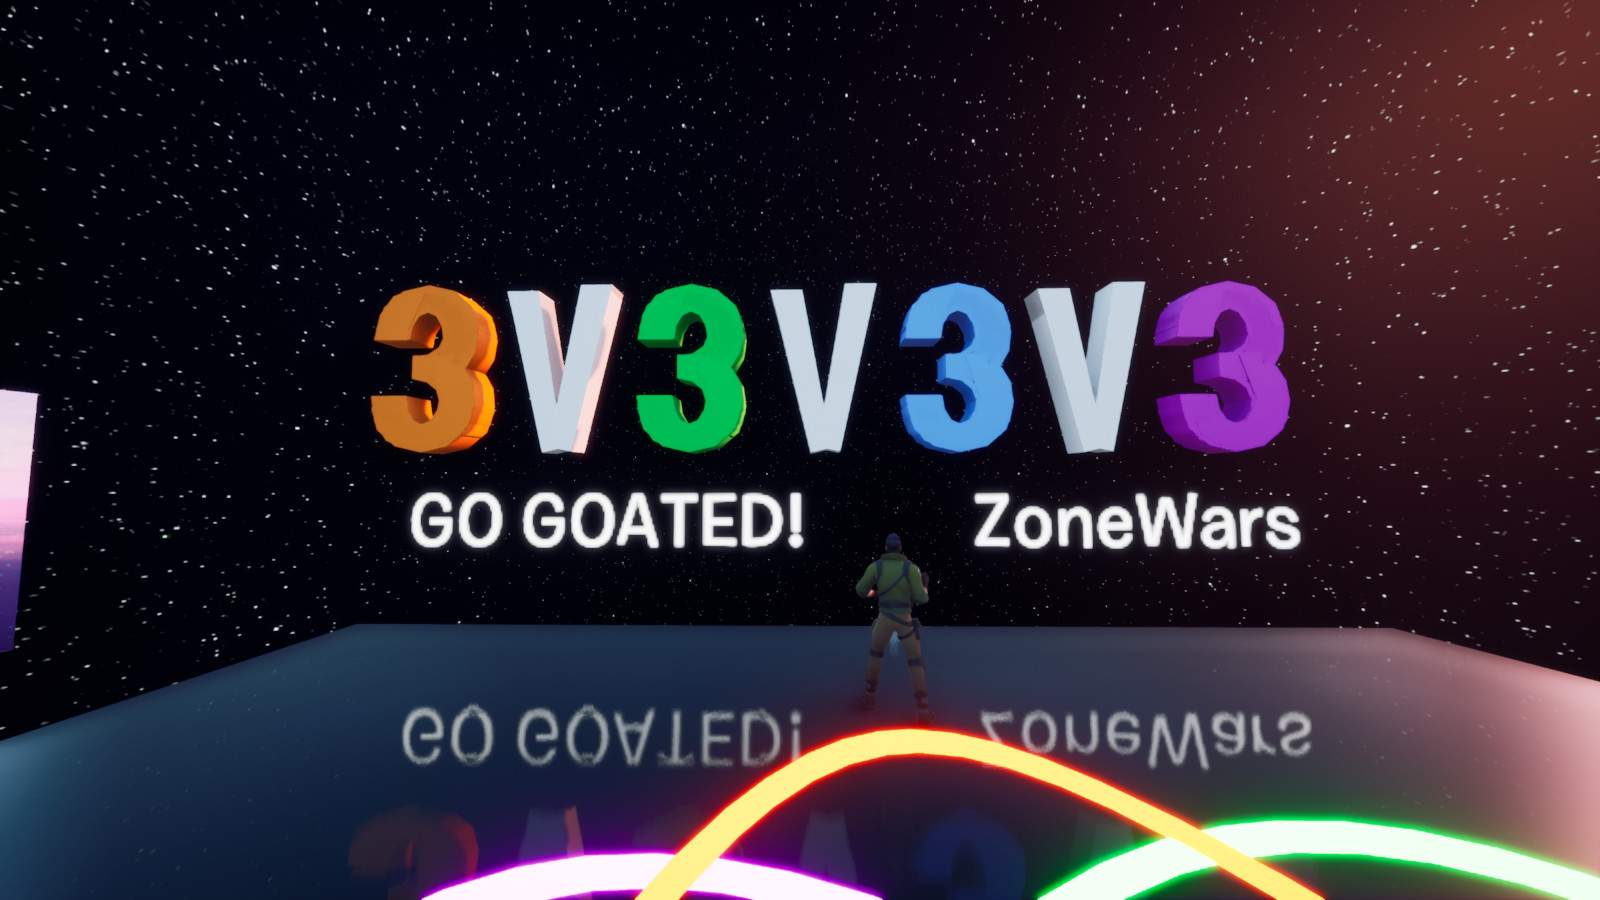 V2v2 go goated code